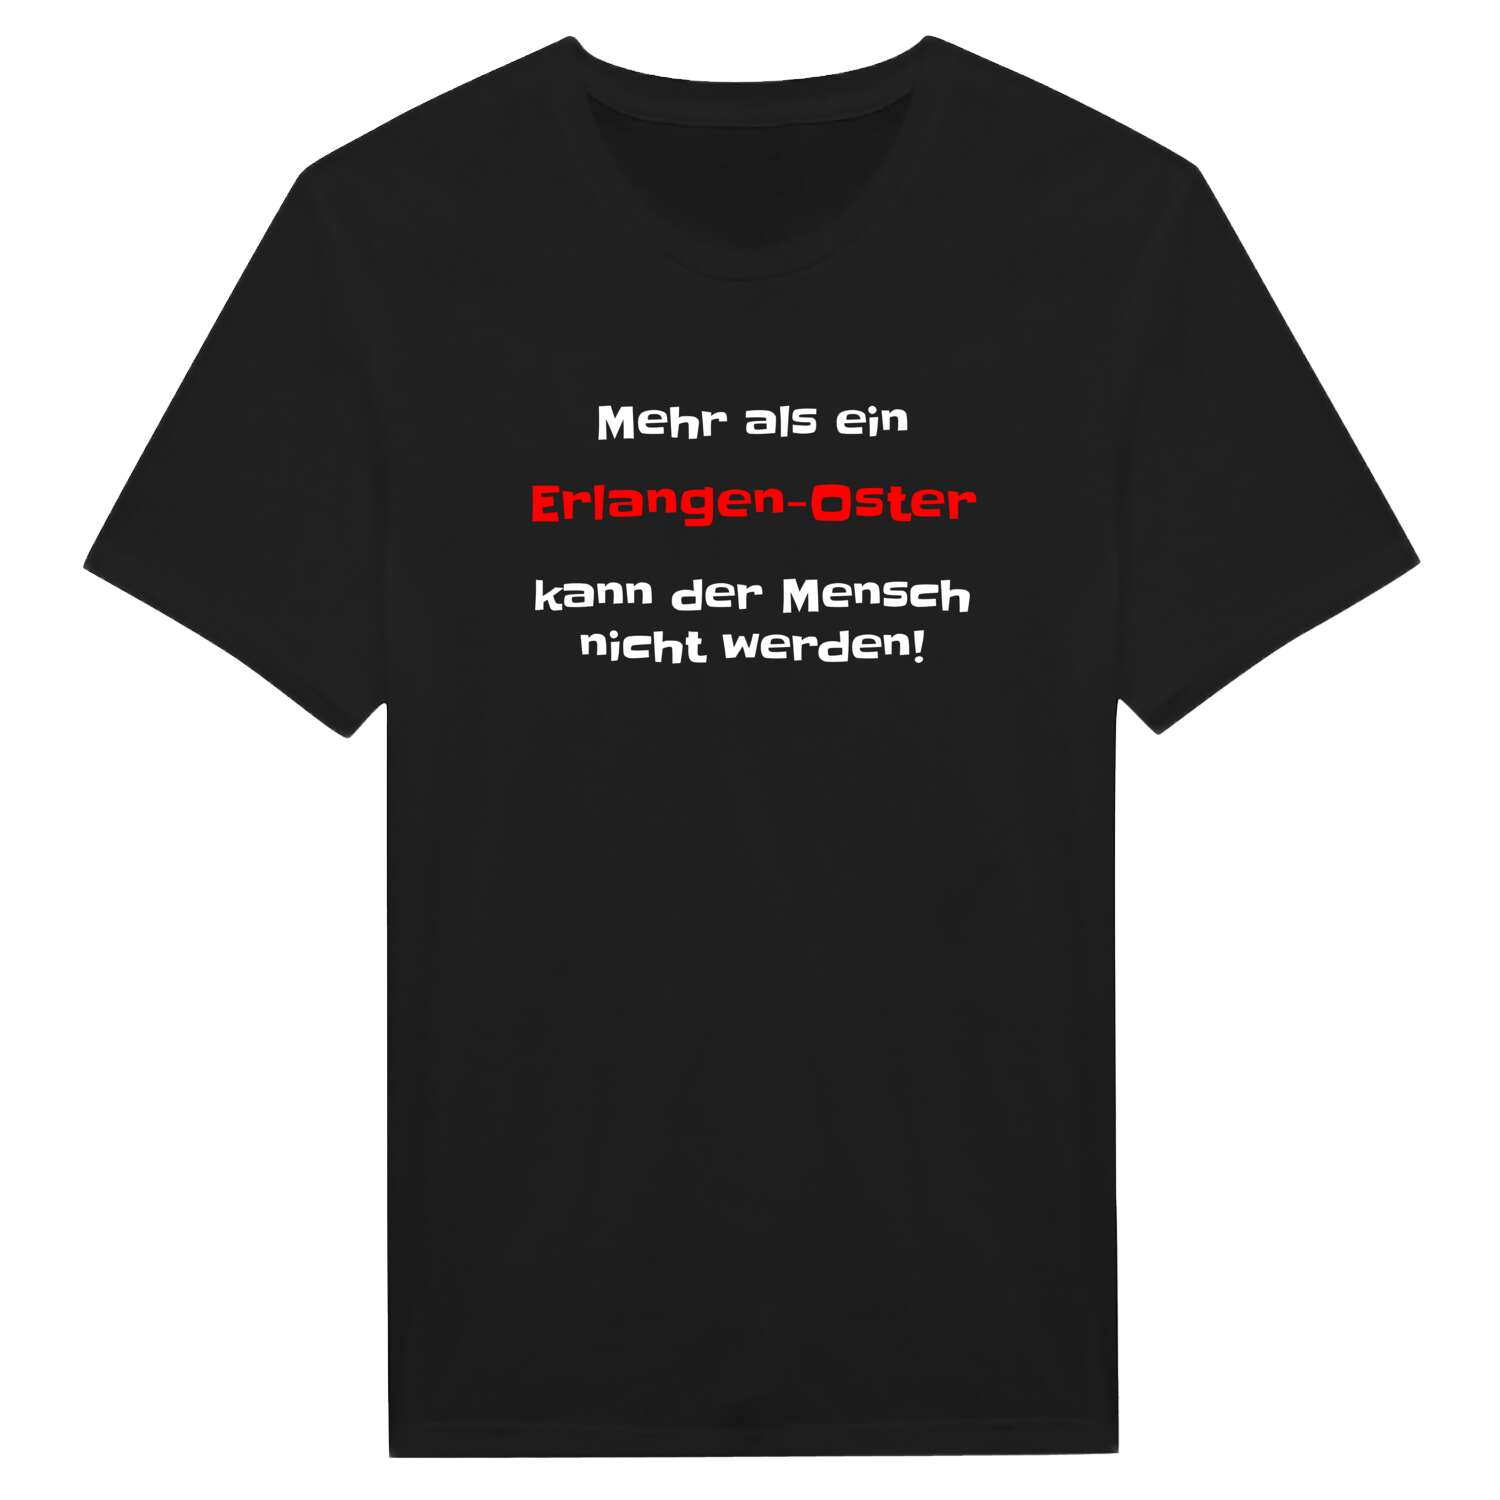 Erlangen-Ost T-Shirt »Mehr als ein«